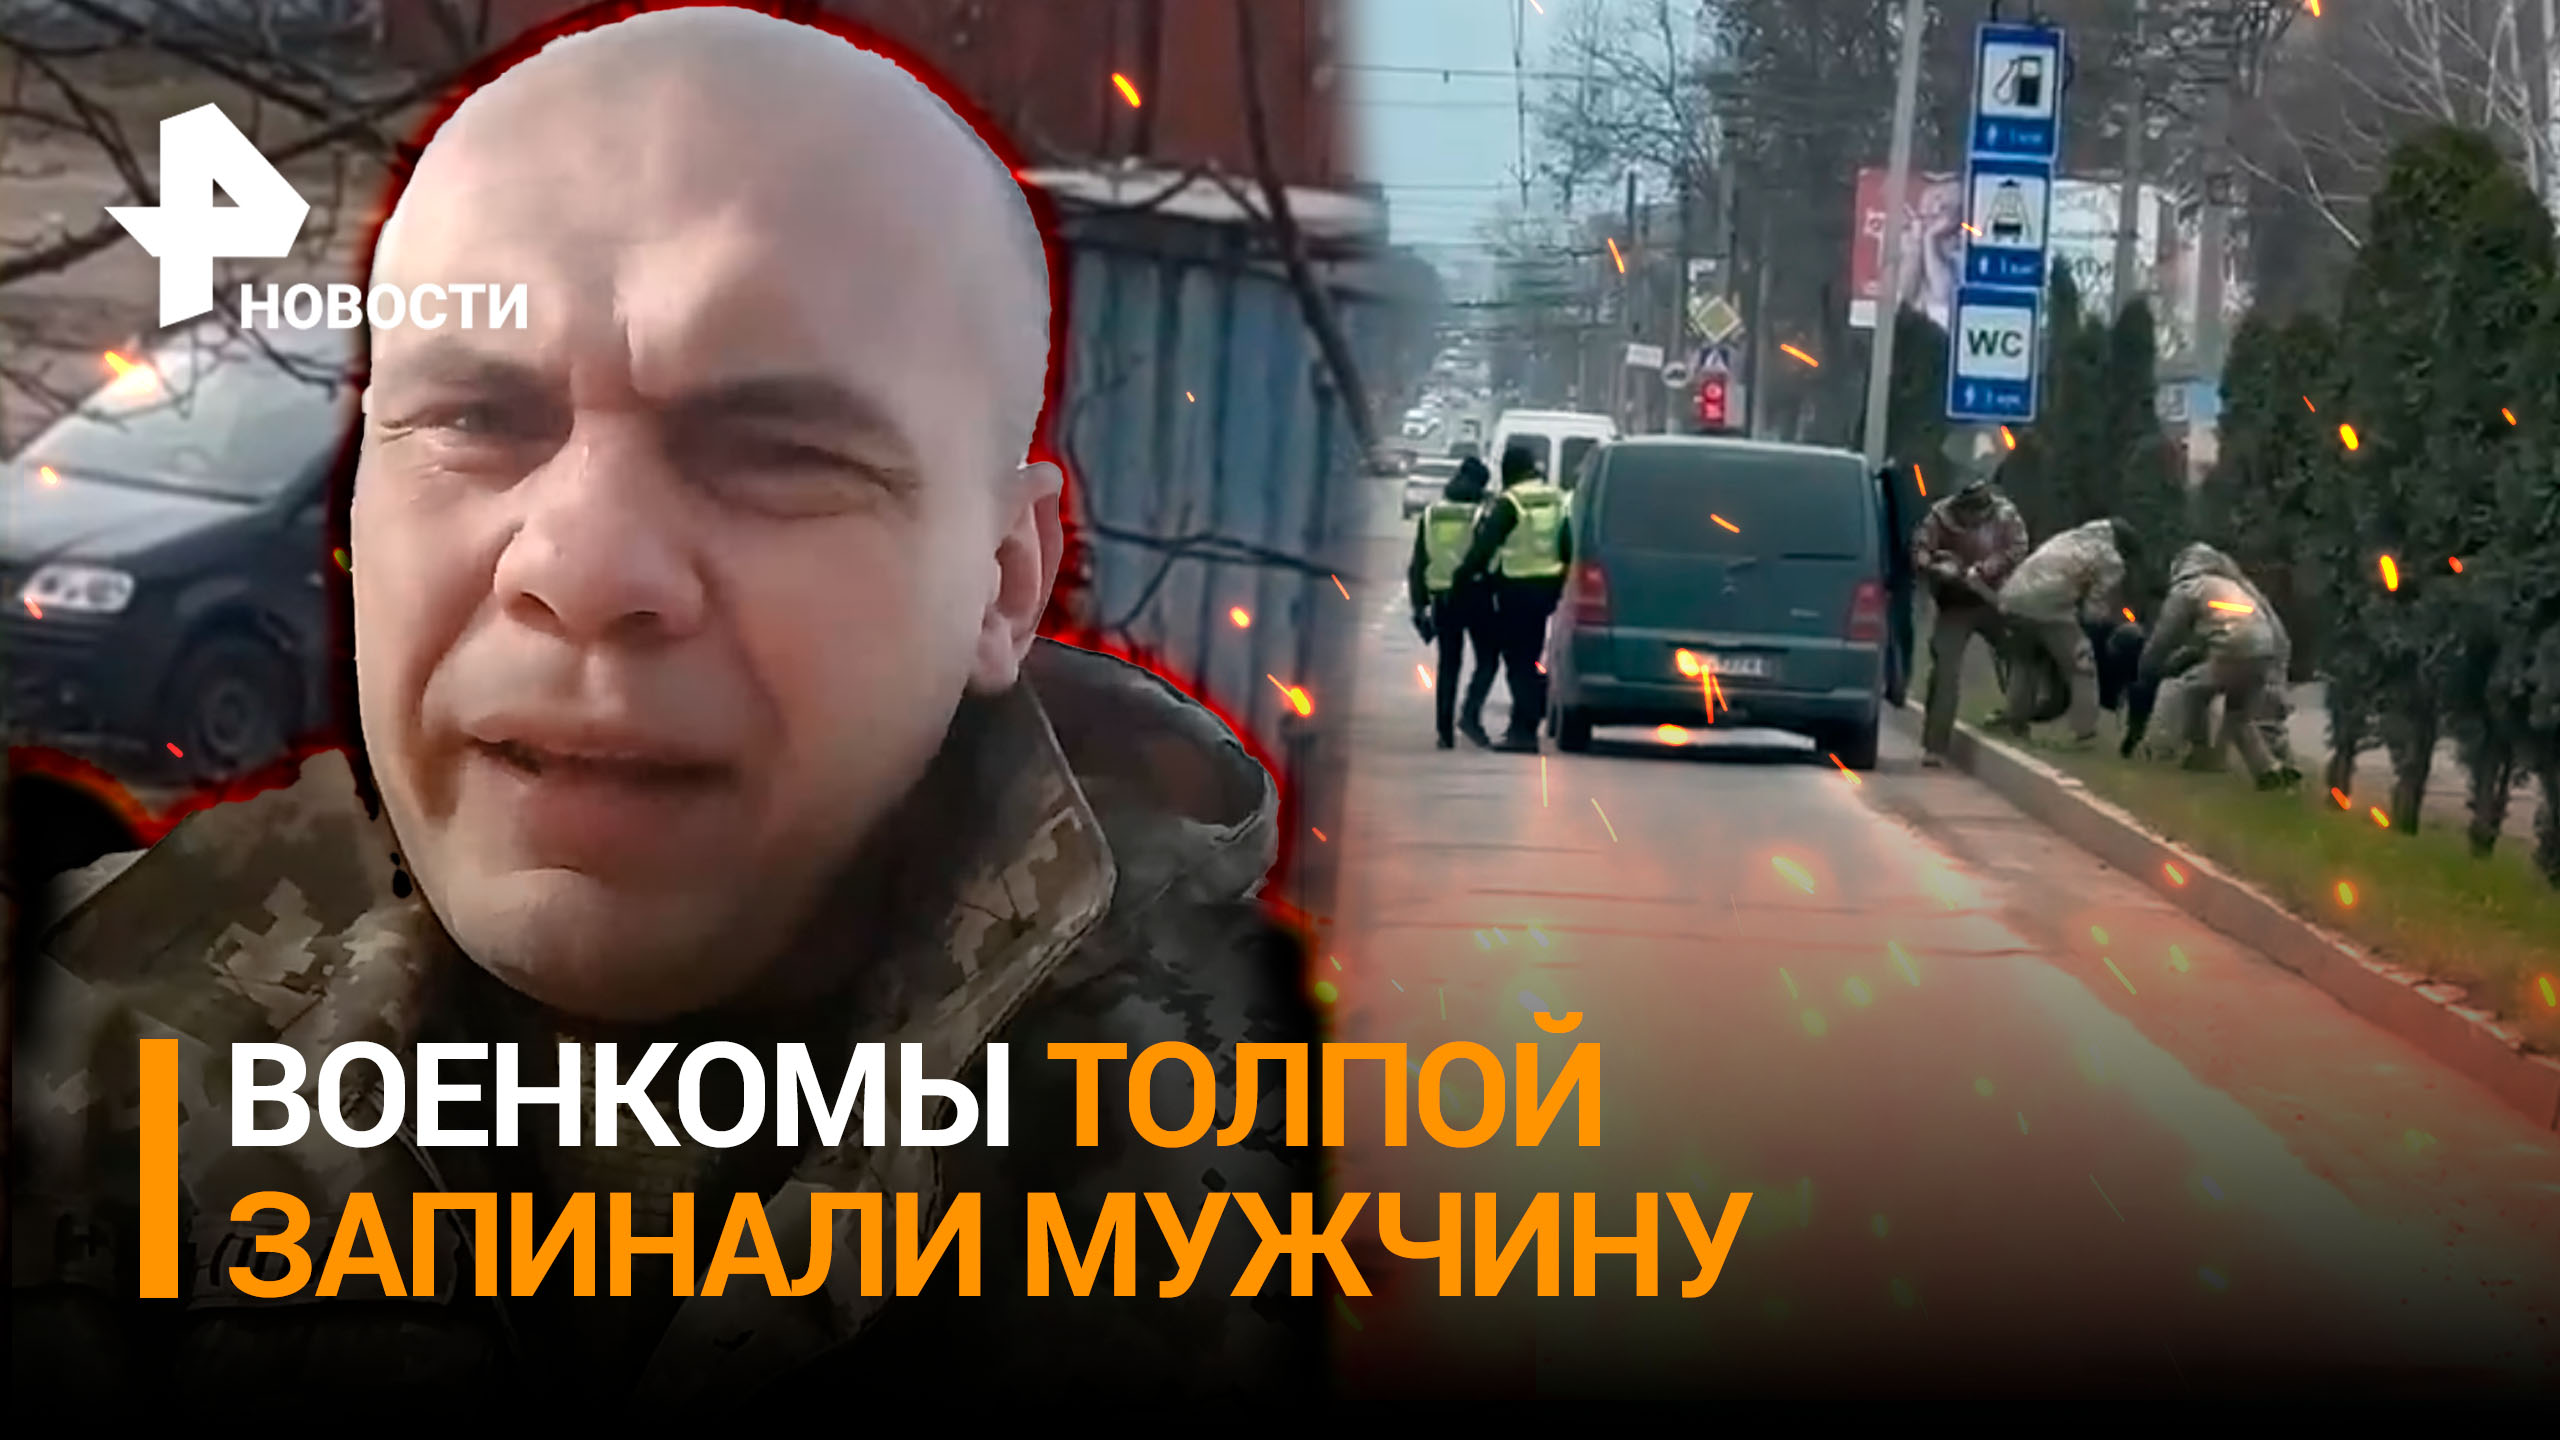 «РФ реально освобождает!»: прозрение украинцев под давлением ТЦК. Военкомы толпой запинали мужчину